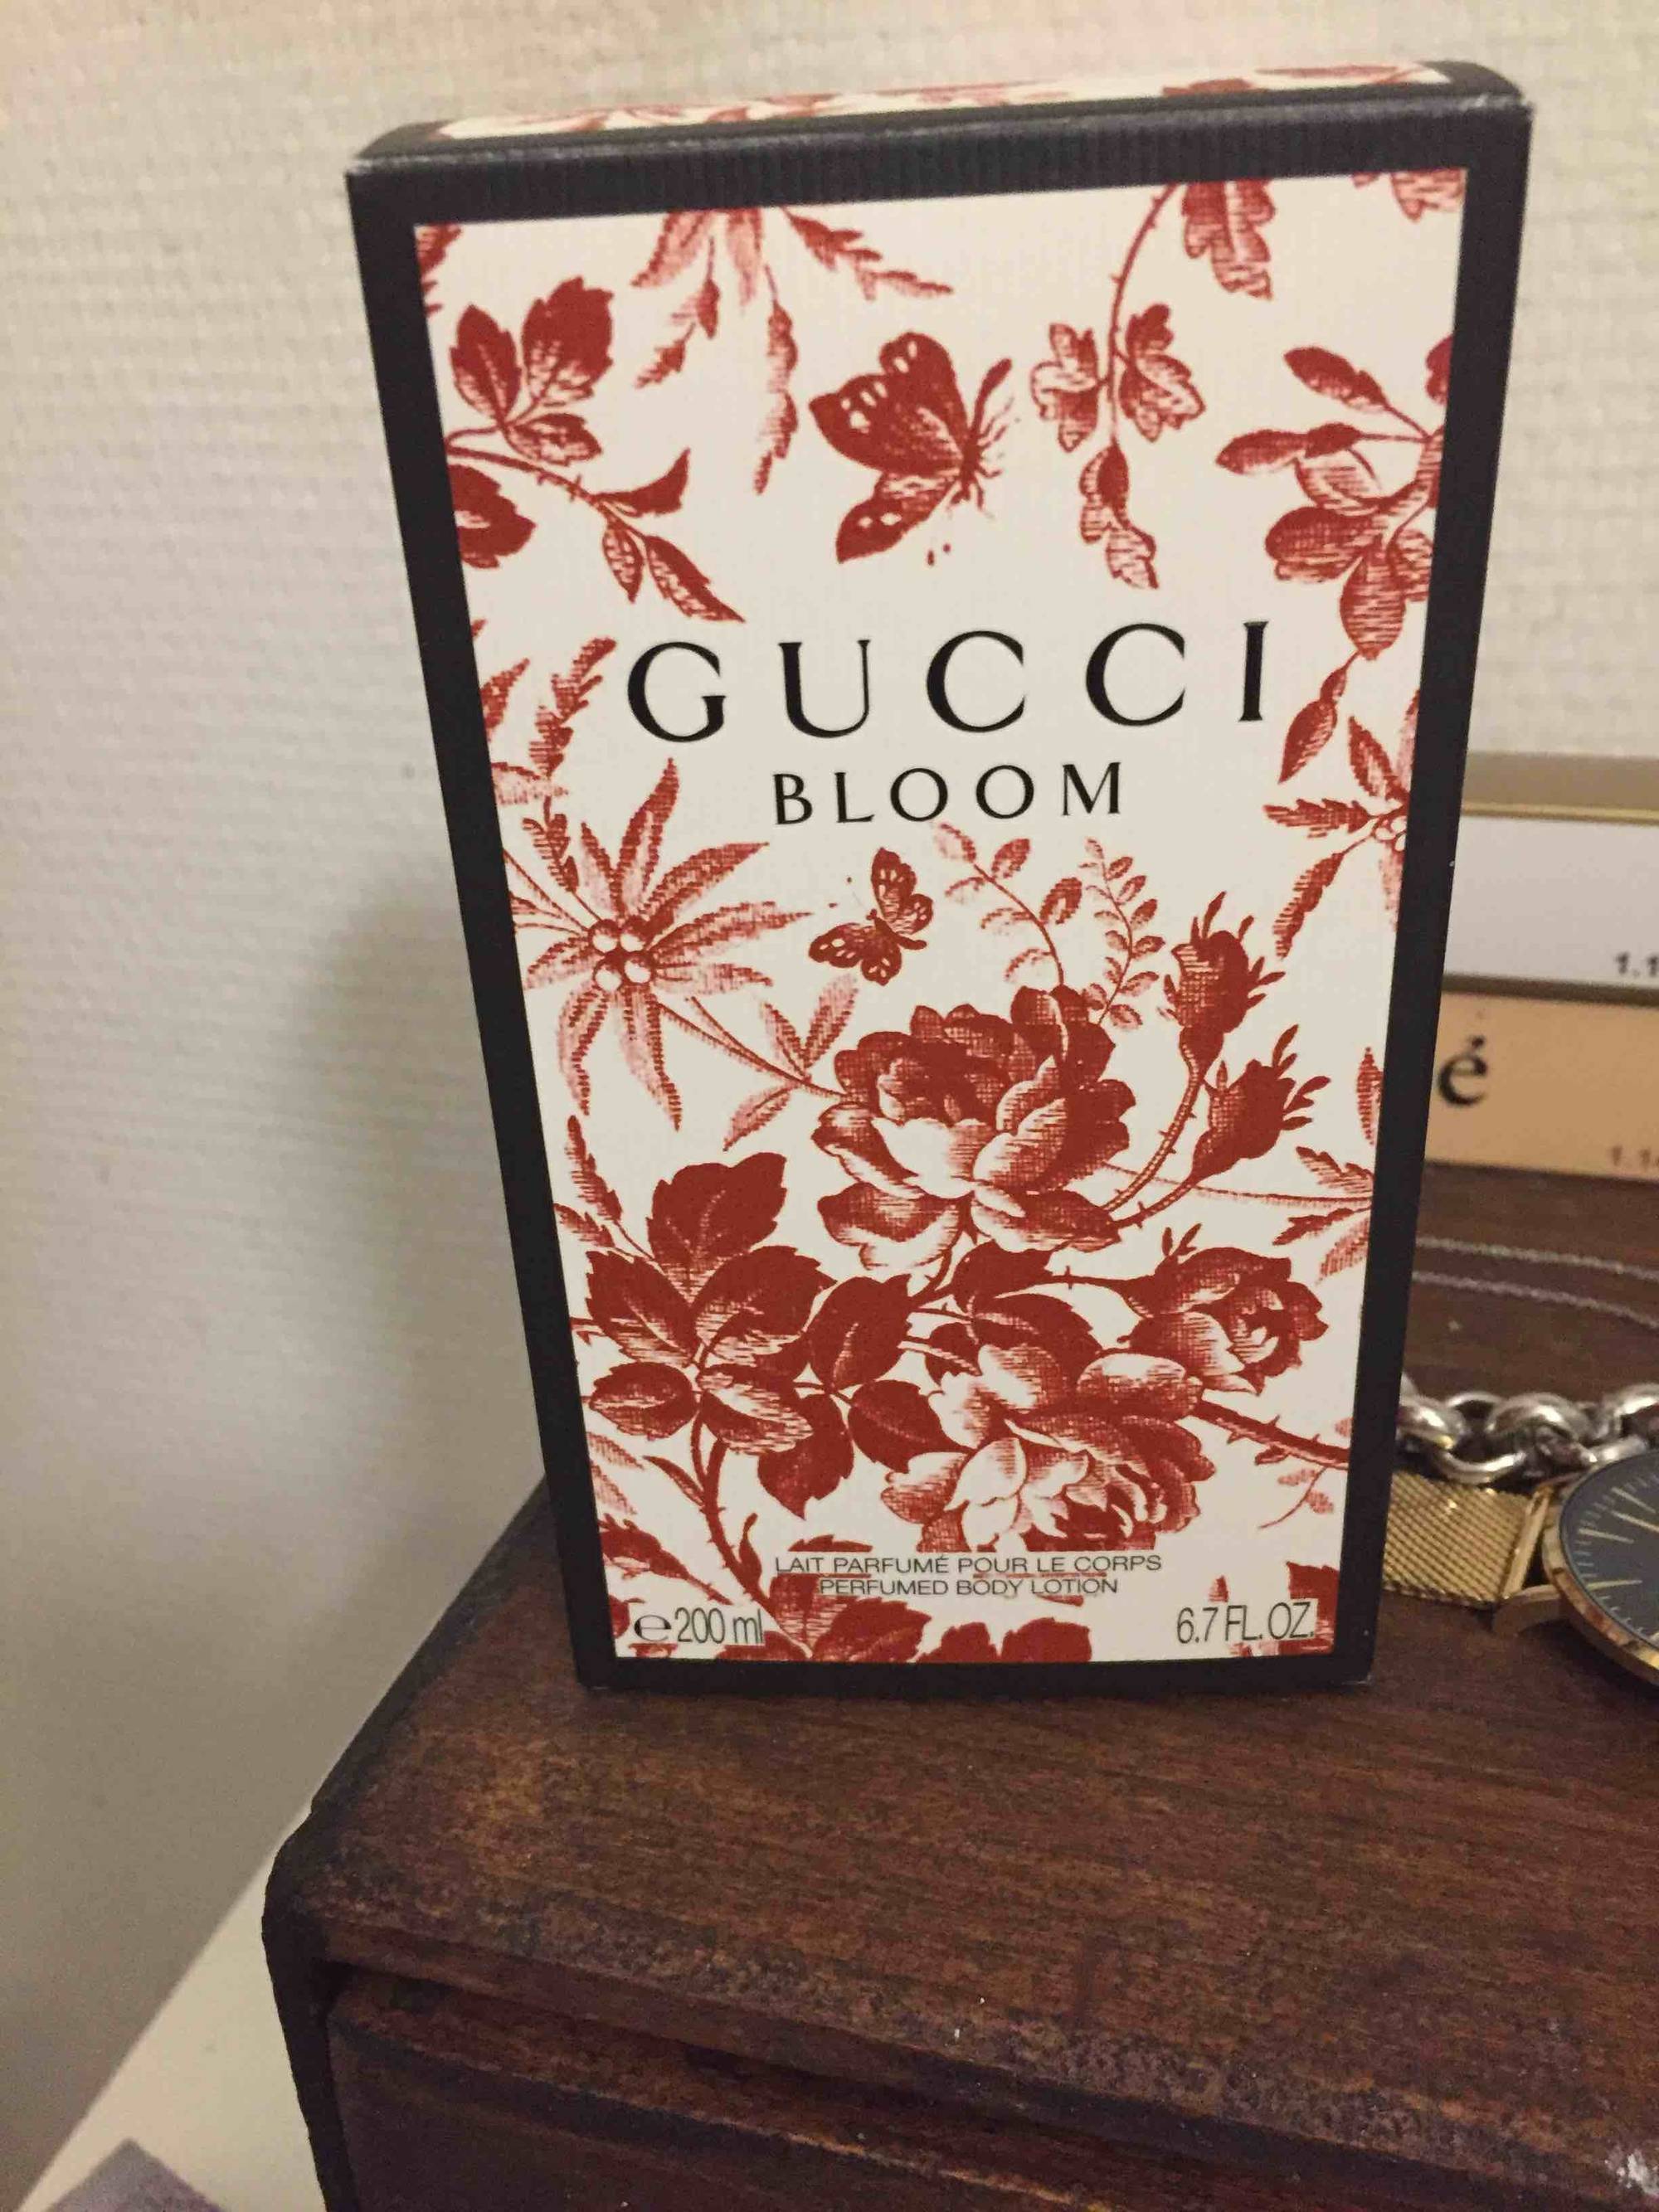 GUCCI - Bloom - Lait parfumé pour le corps